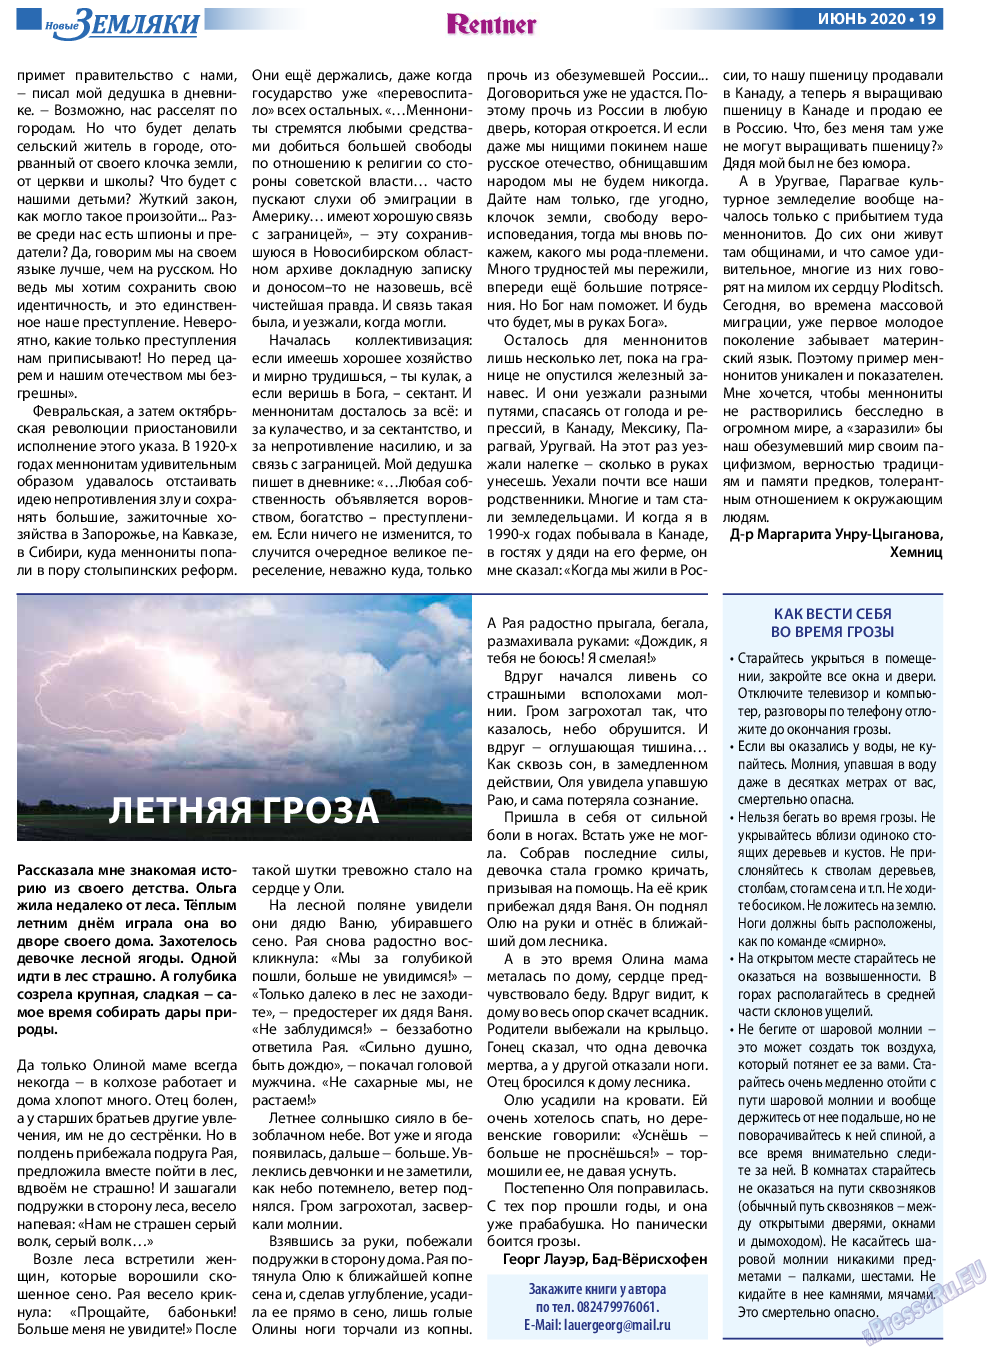 Новые Земляки, газета. 2020 №6 стр.19